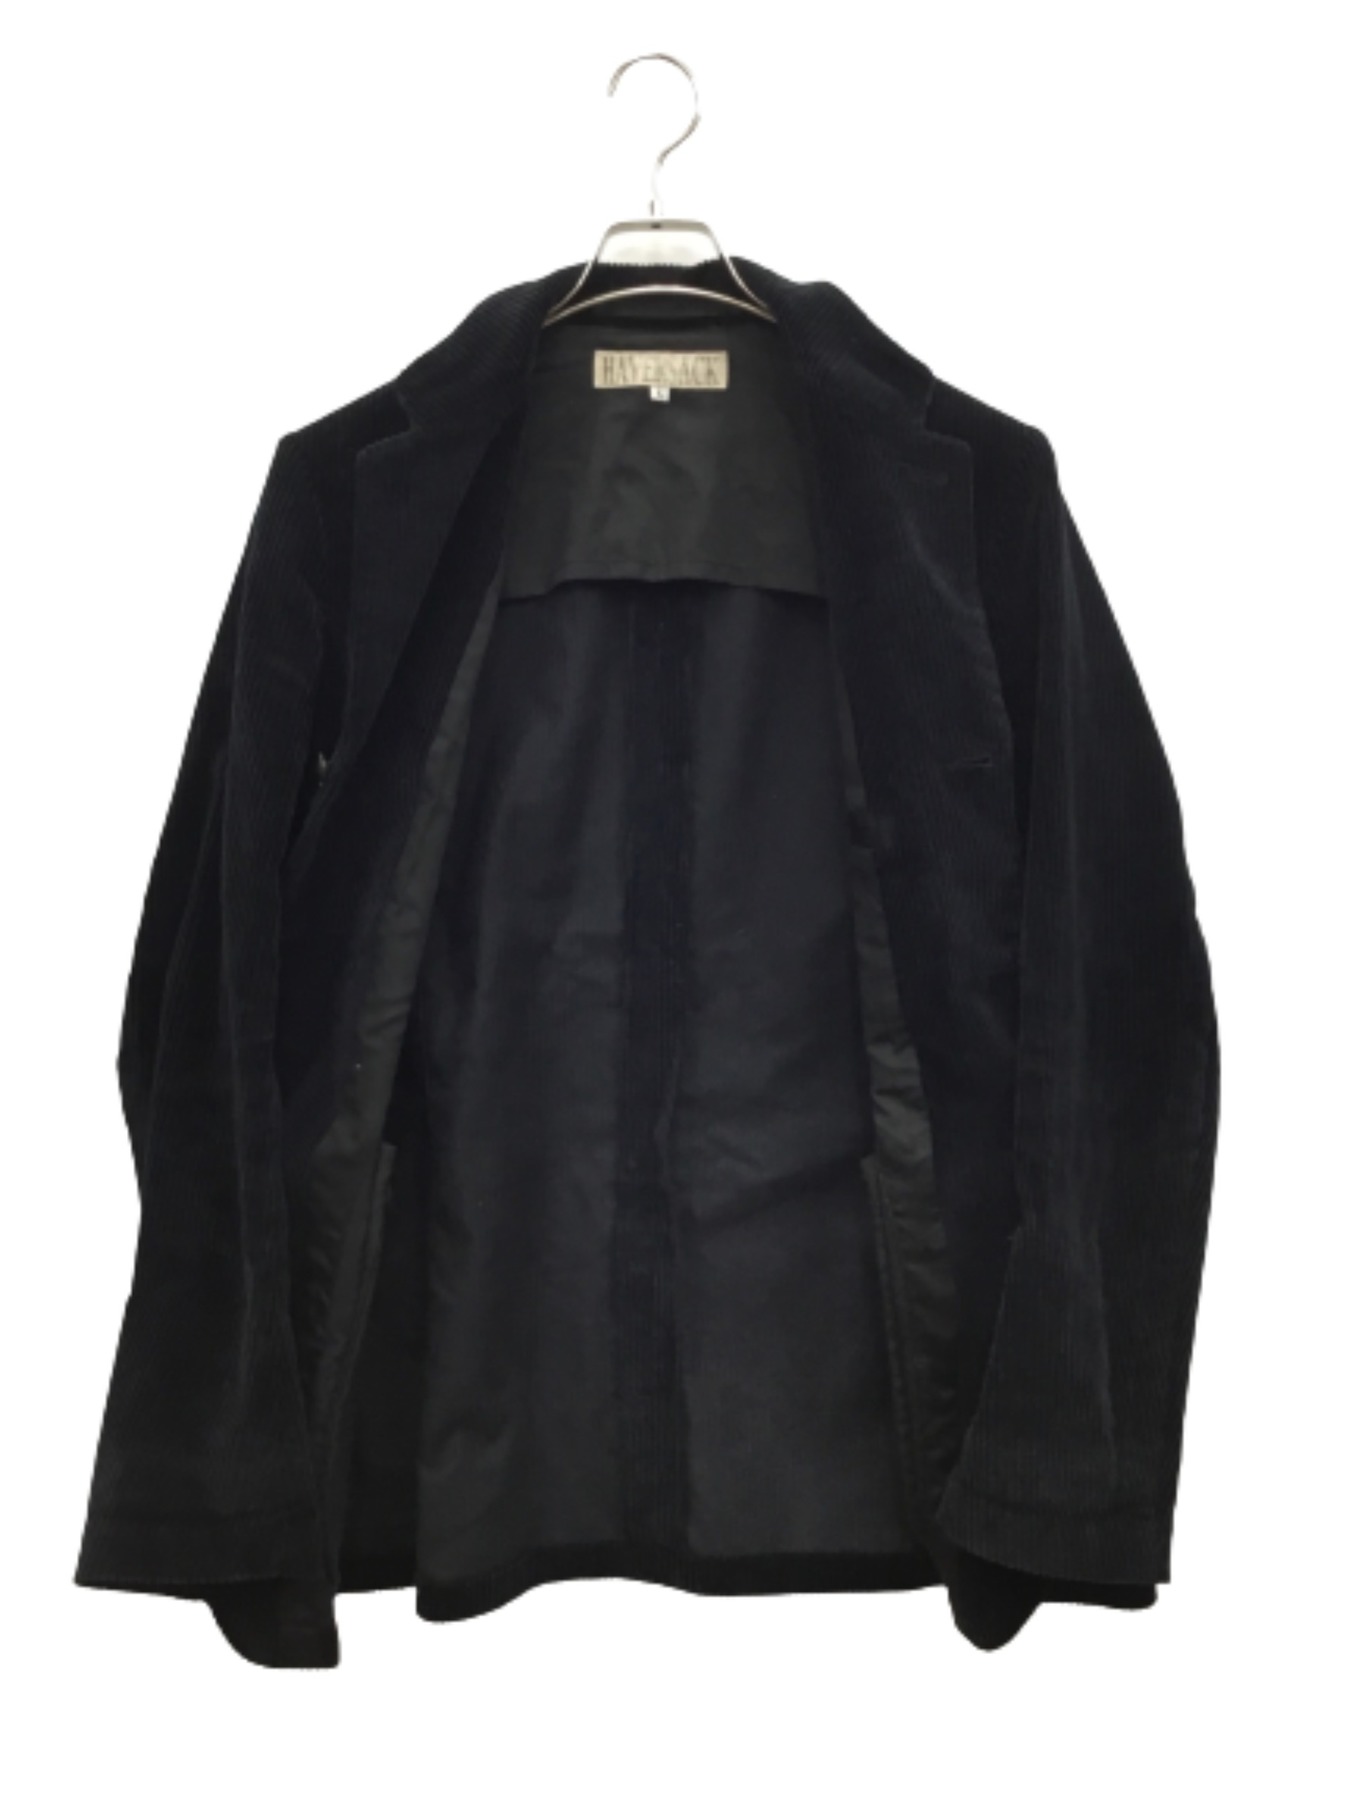 HAVERSACK (ハバーサック) コーデュロイジャケット ブラック サイズ:L